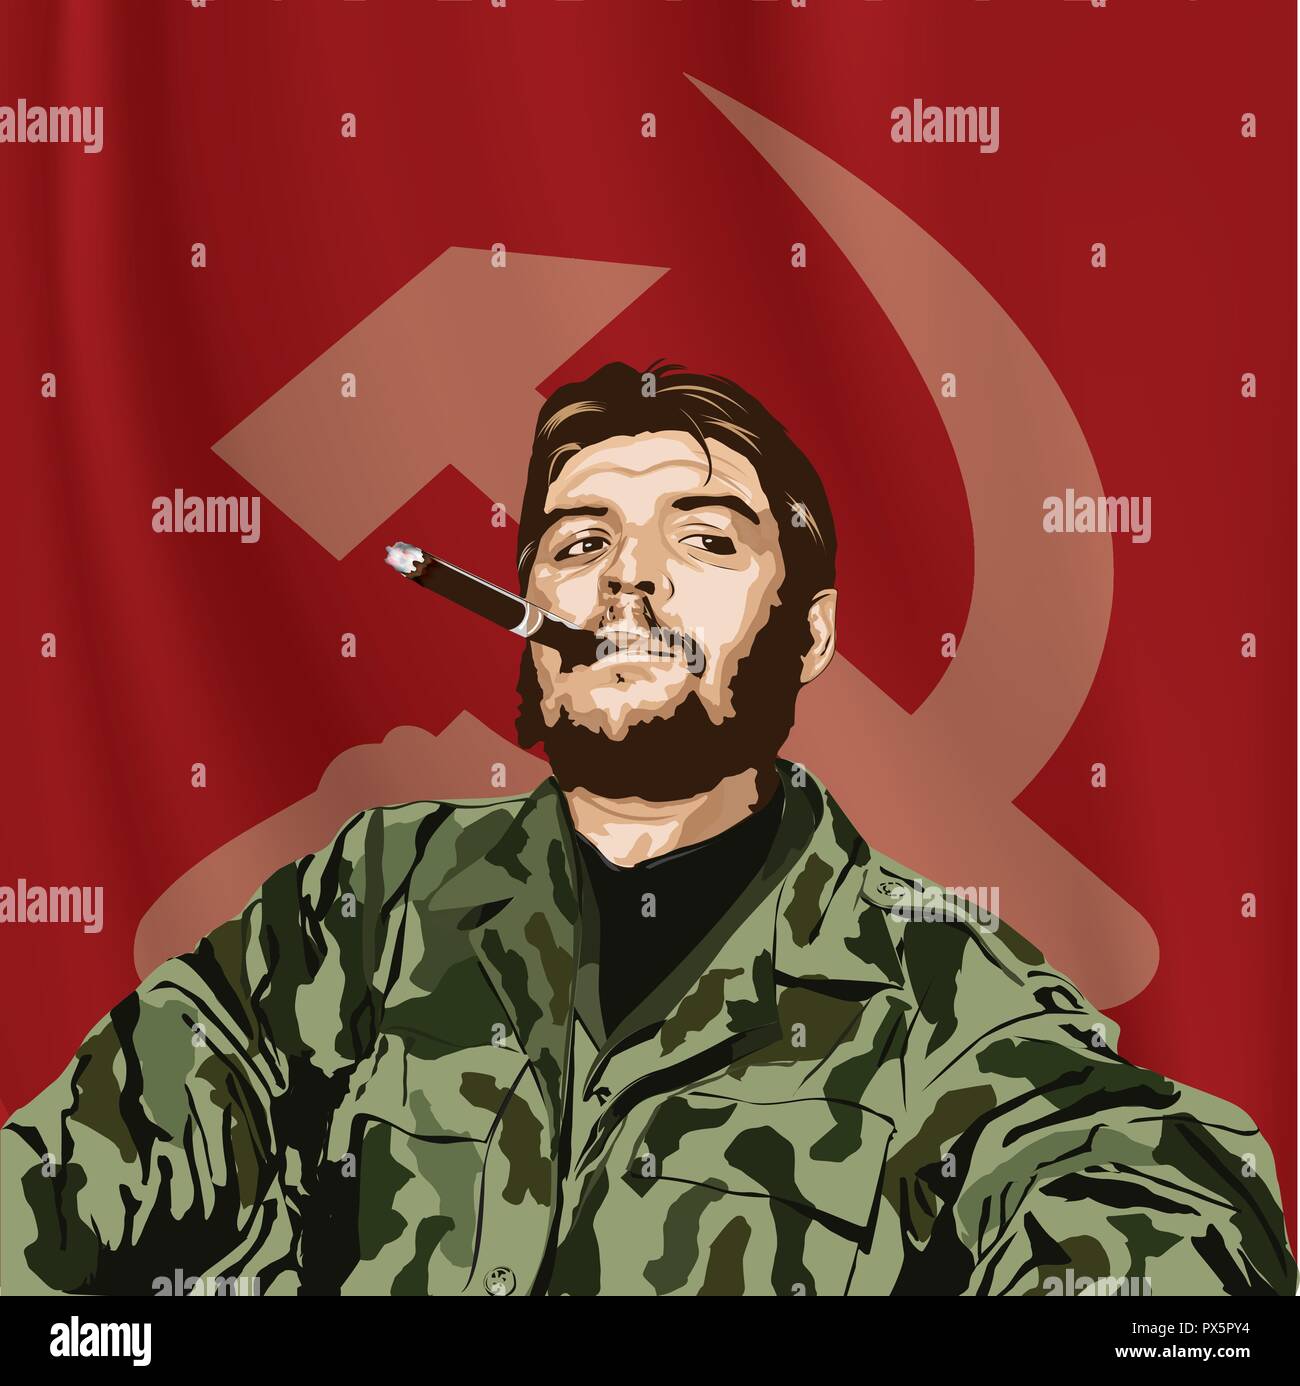 Ernesto "Che" Guevara(1928 - 1967 ) è stato un argentino rivoluzionario marxista. Una figura importante della Rivoluzione Cubana. Immagine vettoriale di Che Guevara, Illustrazione Vettoriale